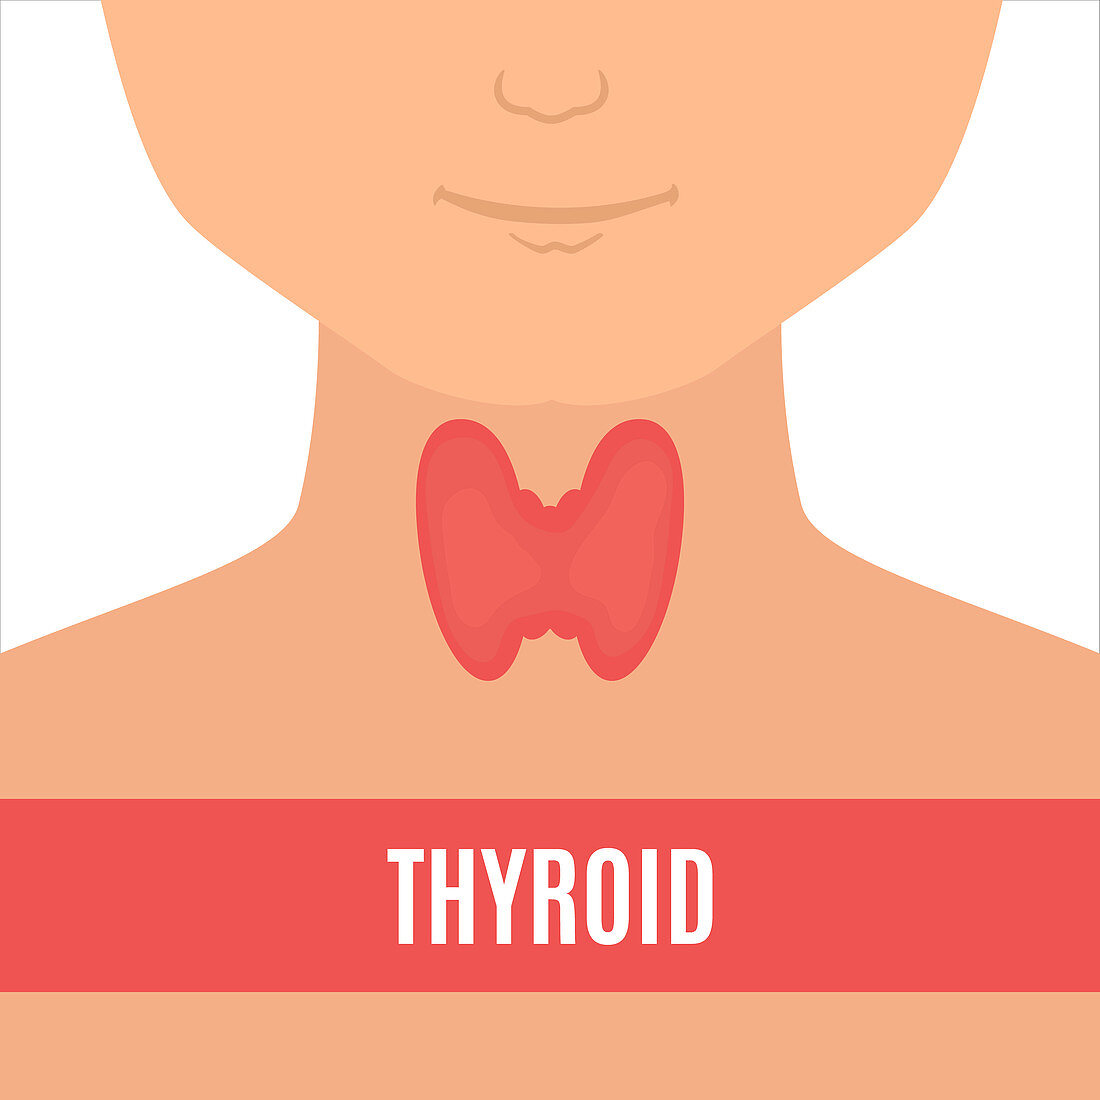 Thyroid gland of a man, illustration